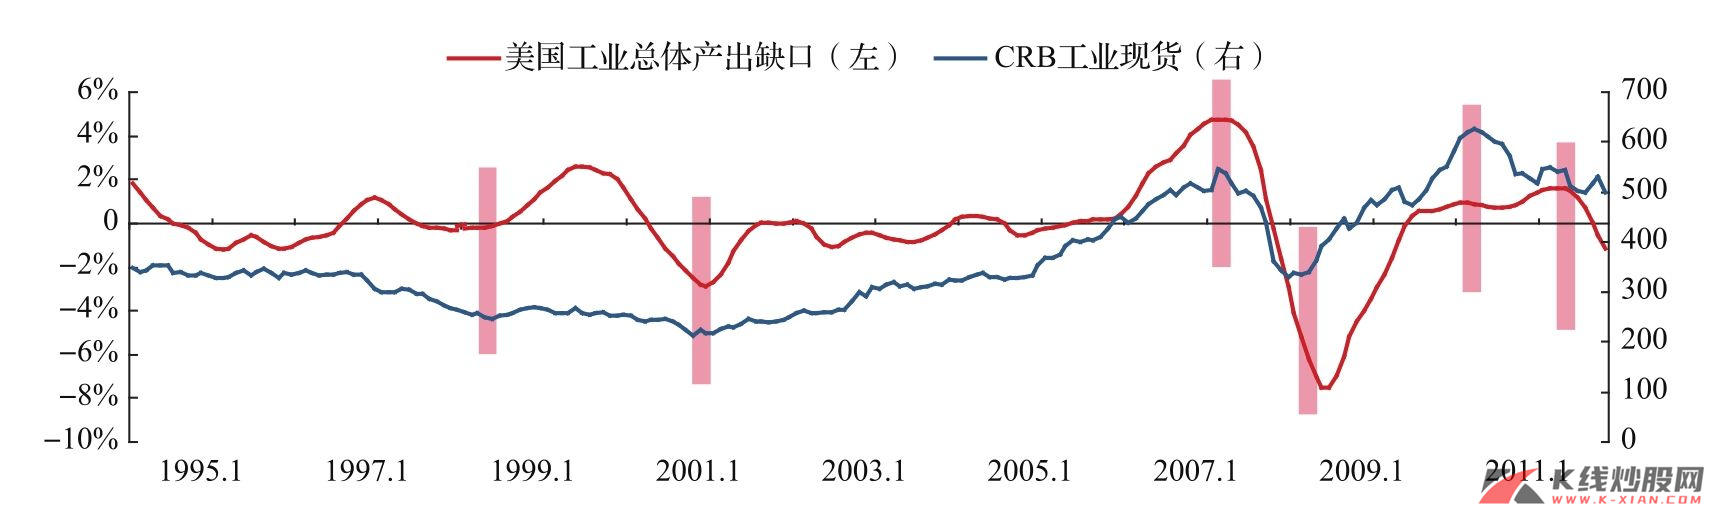 CRB工业现货指数与美国经济周期